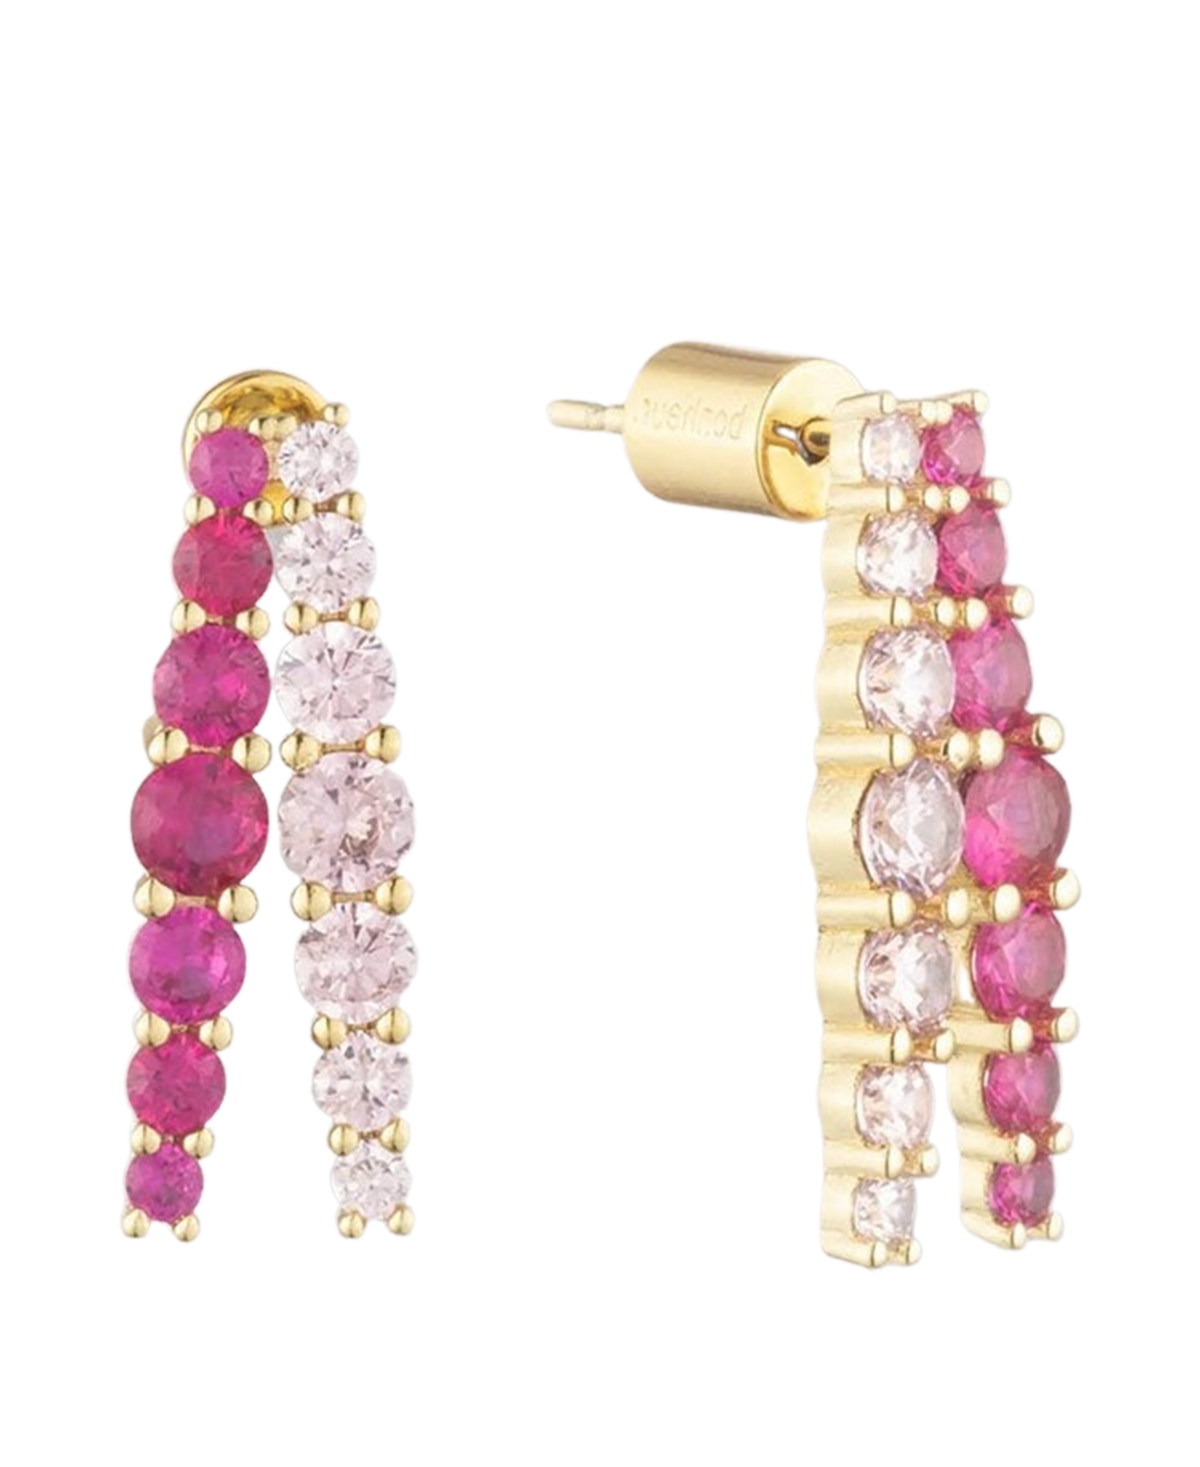 Bonheur Jewelry Seraphine Pink Crystal Half Hoop Earrings In Multi